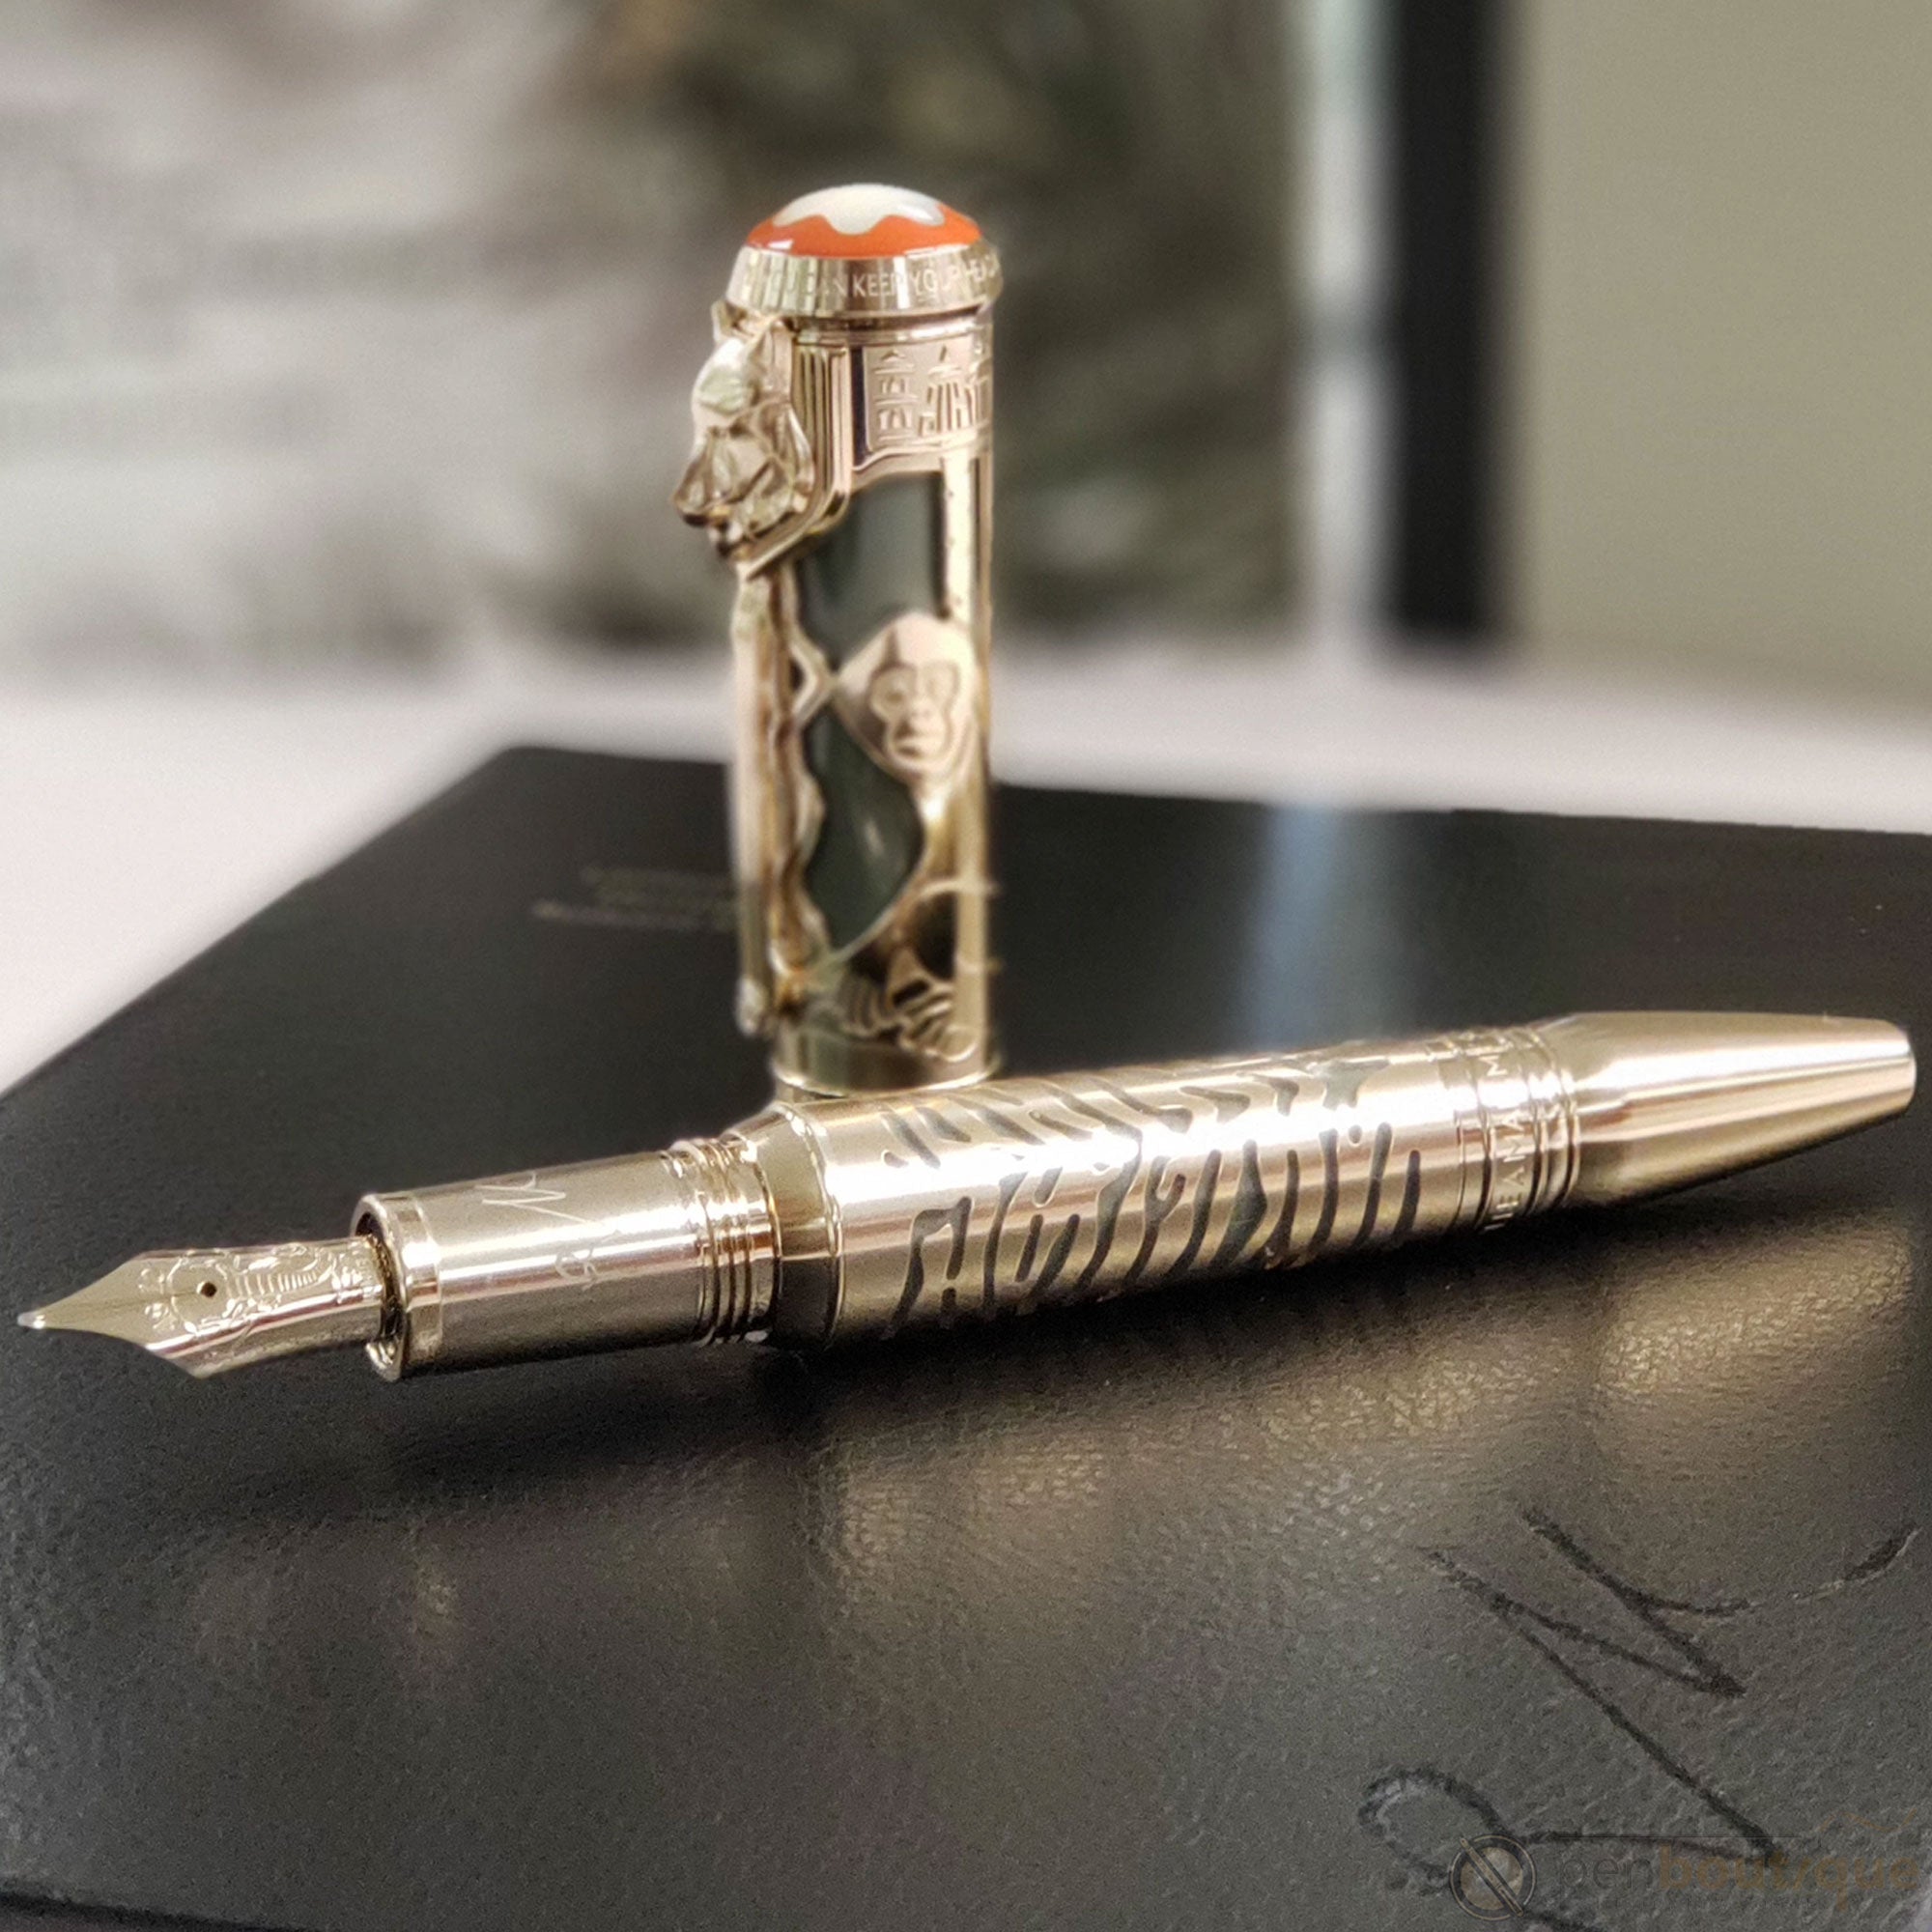 Montblanc Fountain Pen - Writers Edition - Kipling-Pen Boutique Ltd